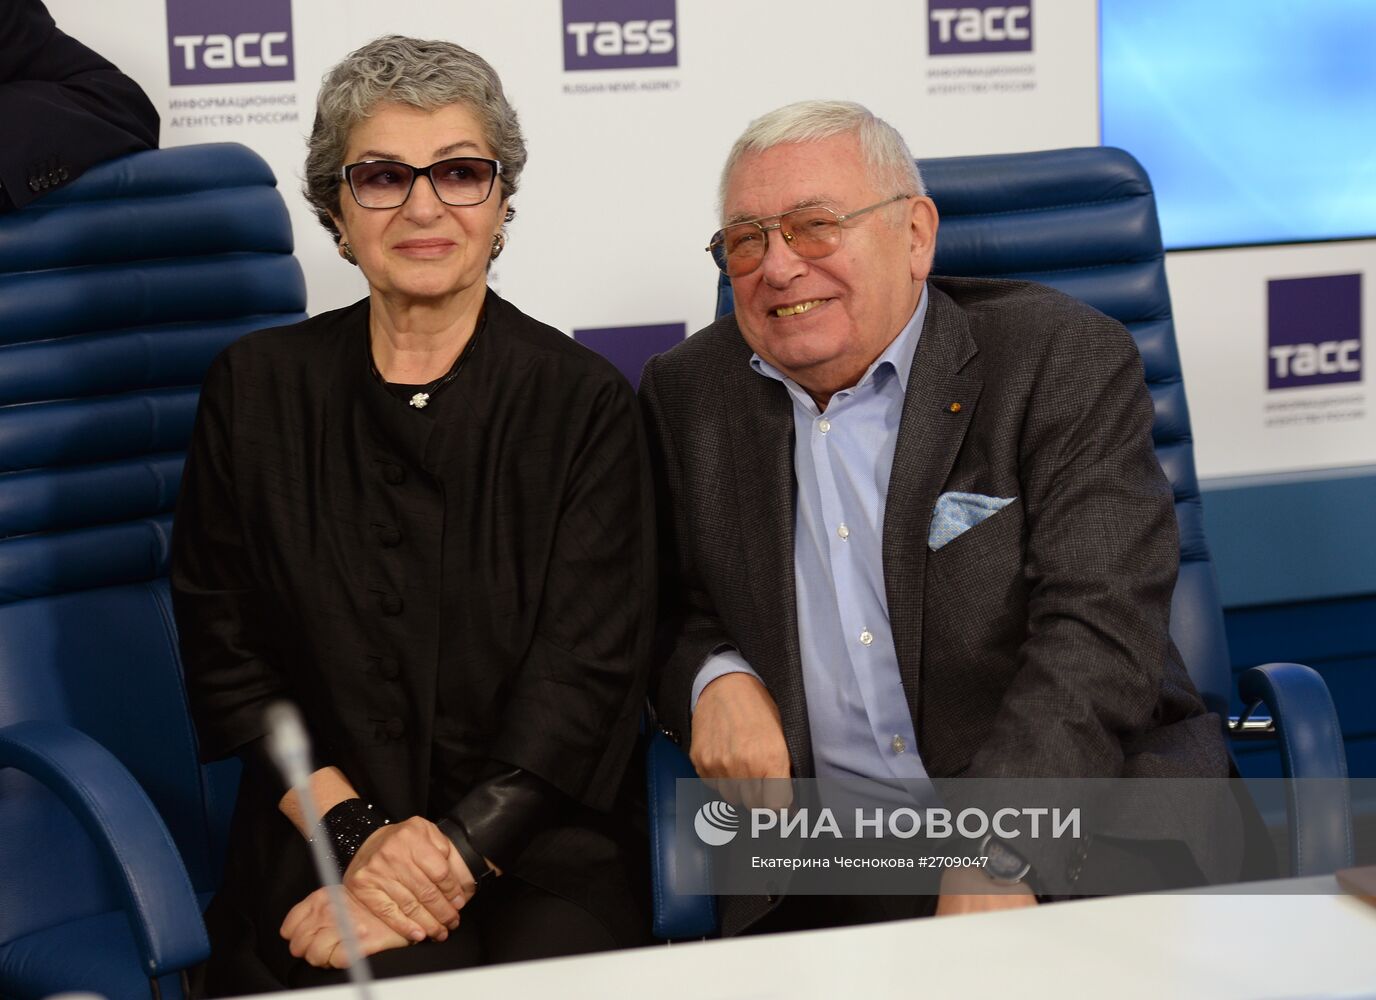 Пресс-конференция, посвященная вручению первой премии Юрия Любимова